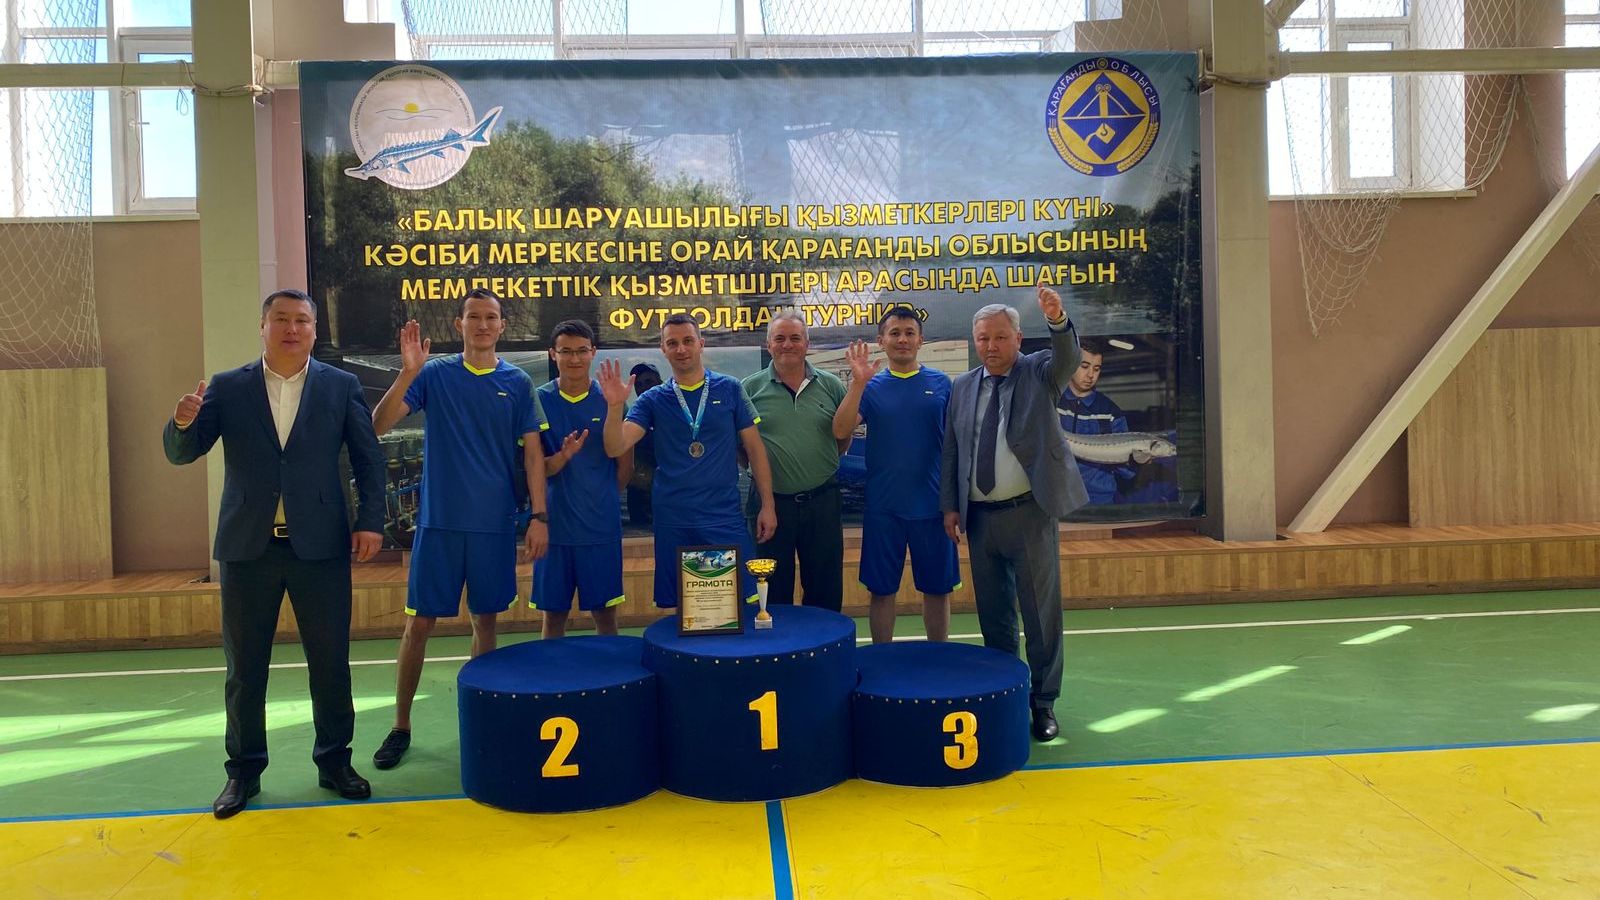 Команда карагандинского филиала Канала Каныша Сатпаева стала победителем турнира по мини-футболу